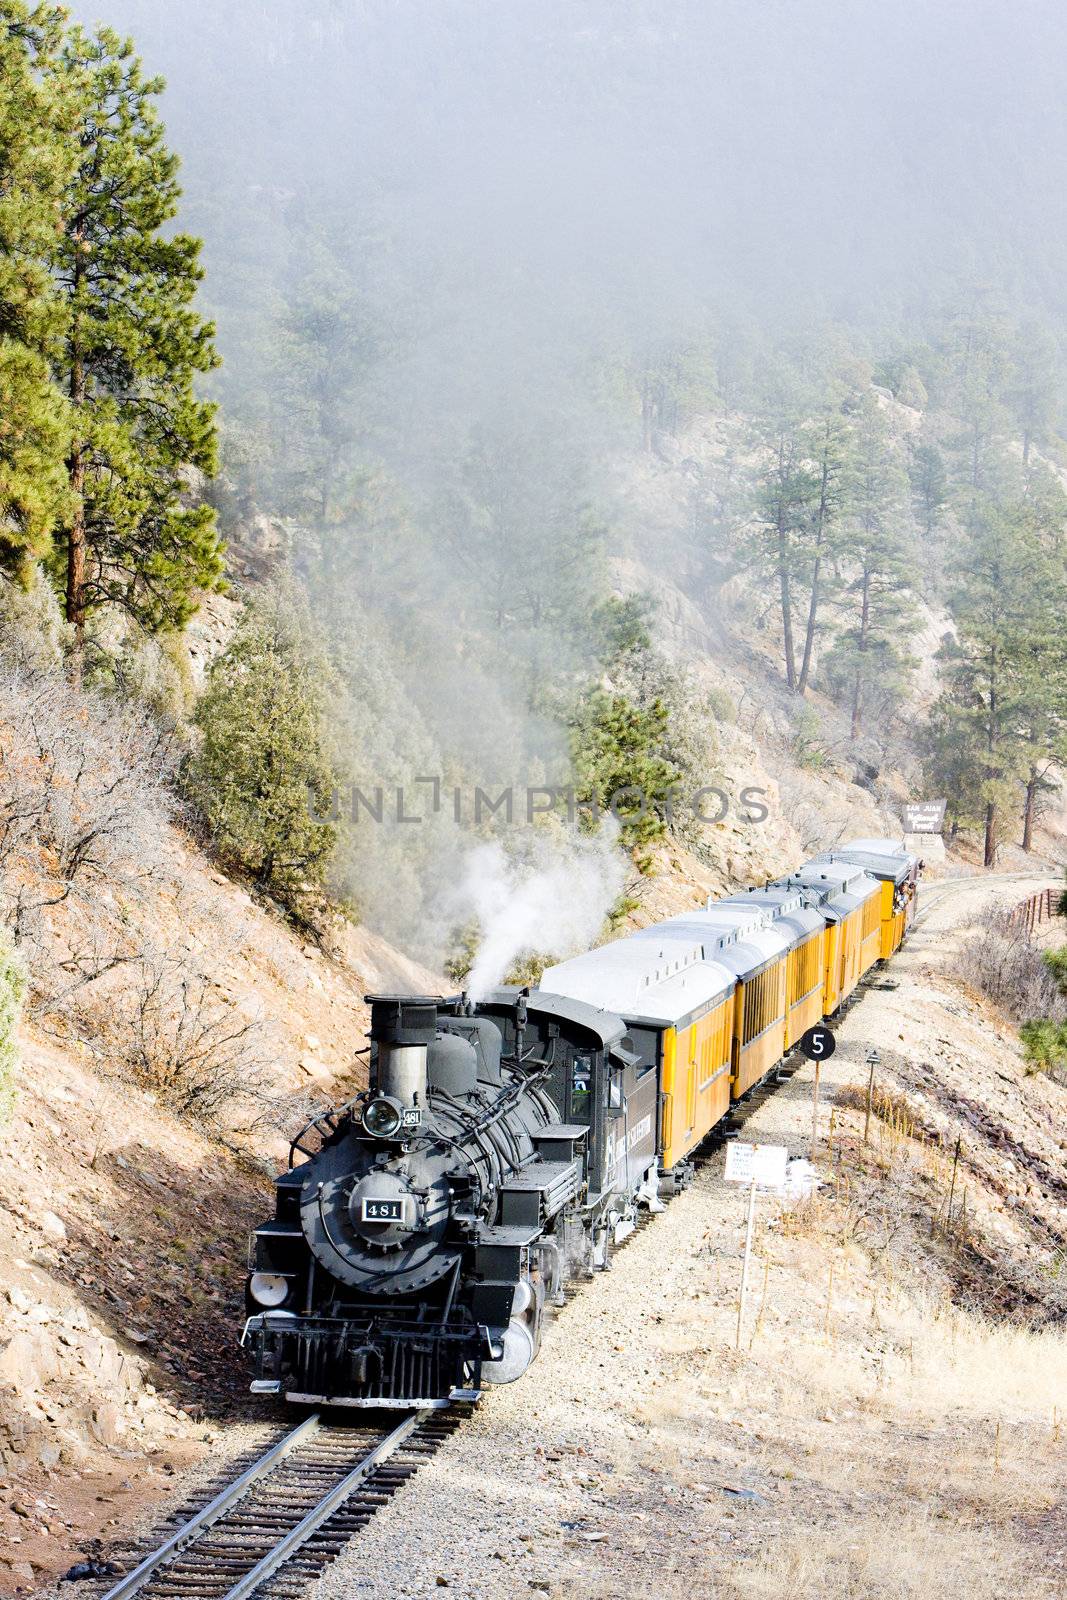 Durango   Silverton Narrow Gauge Railroad, Colorado, USA by phbcz